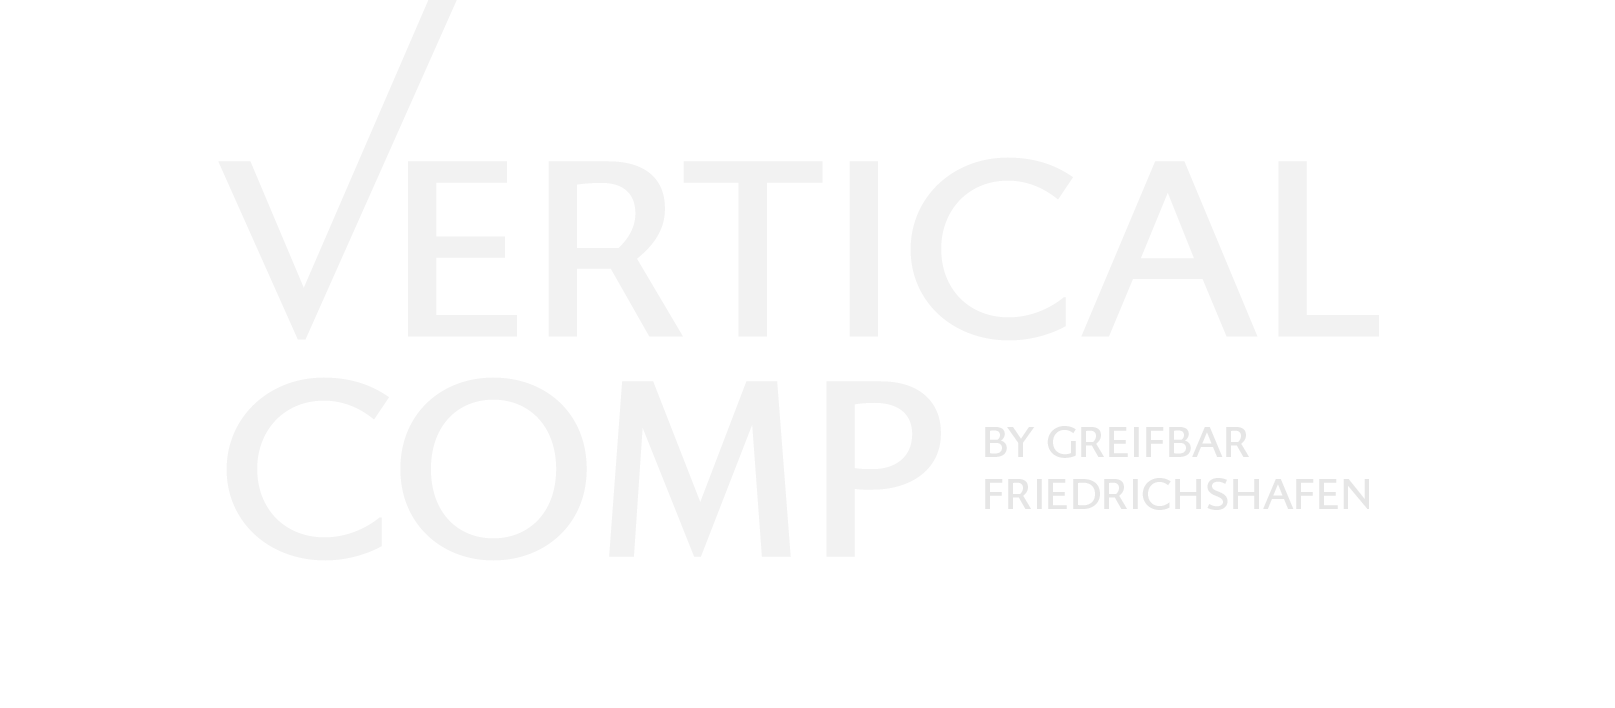 Logo Vertical Comp brigth grey transparent